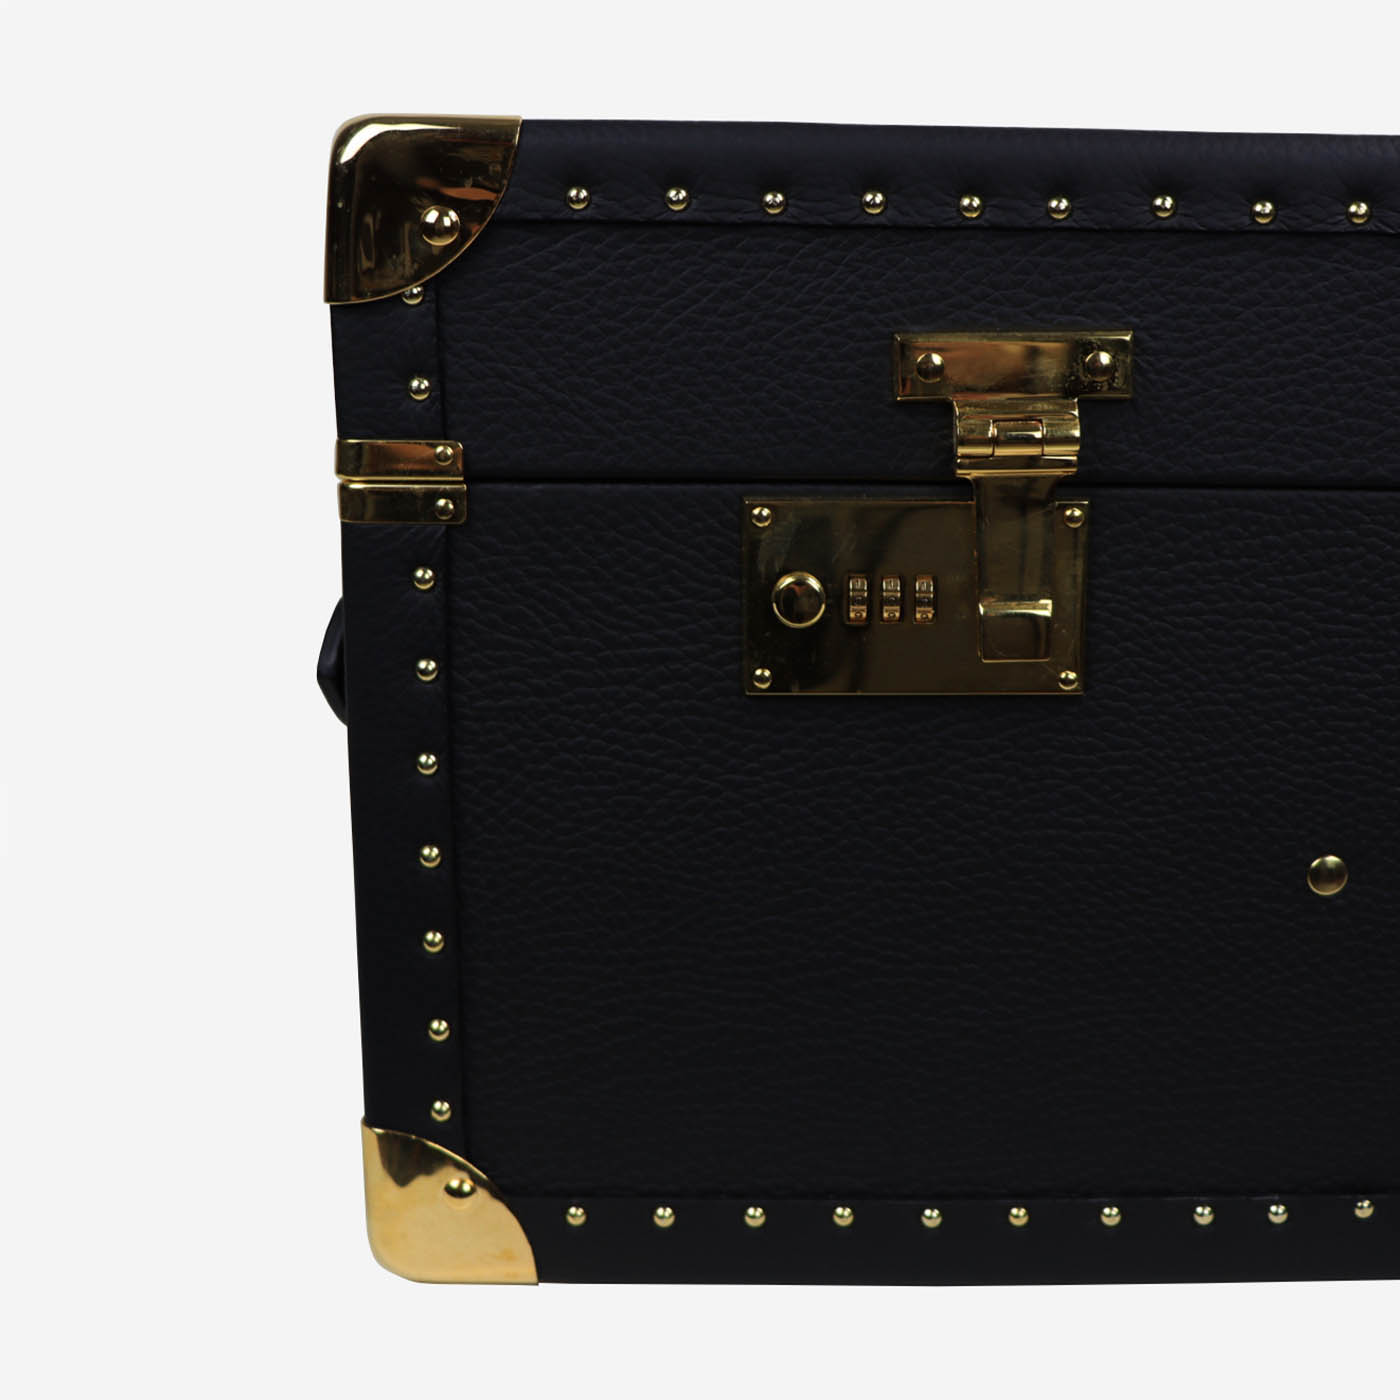 Regale Quilted Medium Black Suitcase (valise noire matelassée) - Vue alternative 2